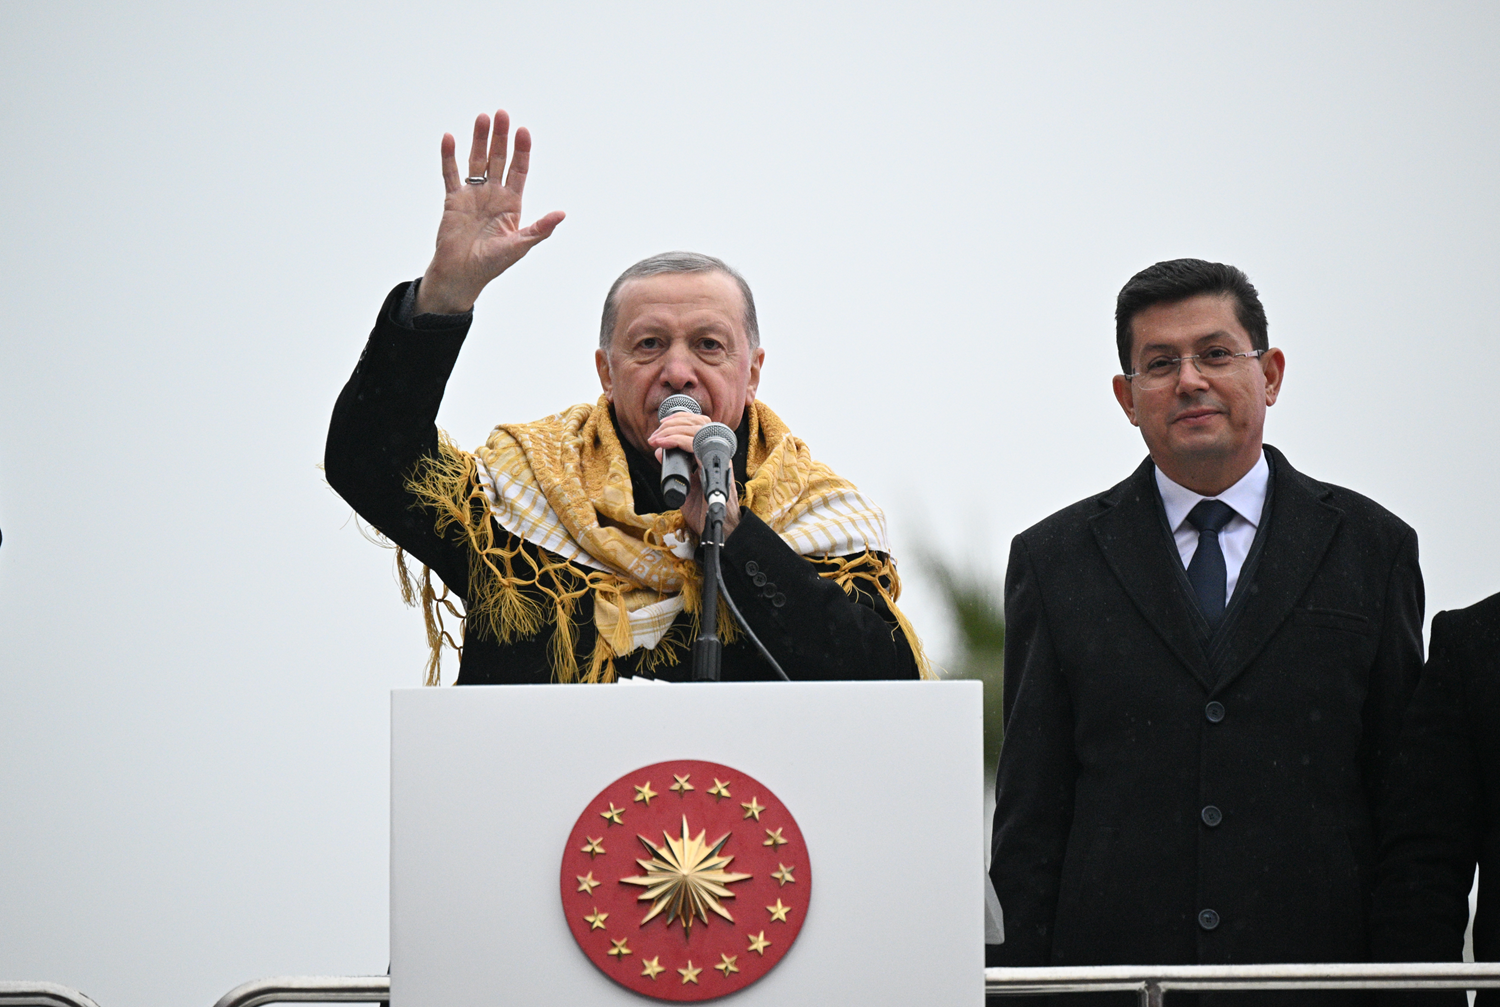 Cumhurbakan Erdoan: Masann altnda birbirlerini tekmeliyorlar